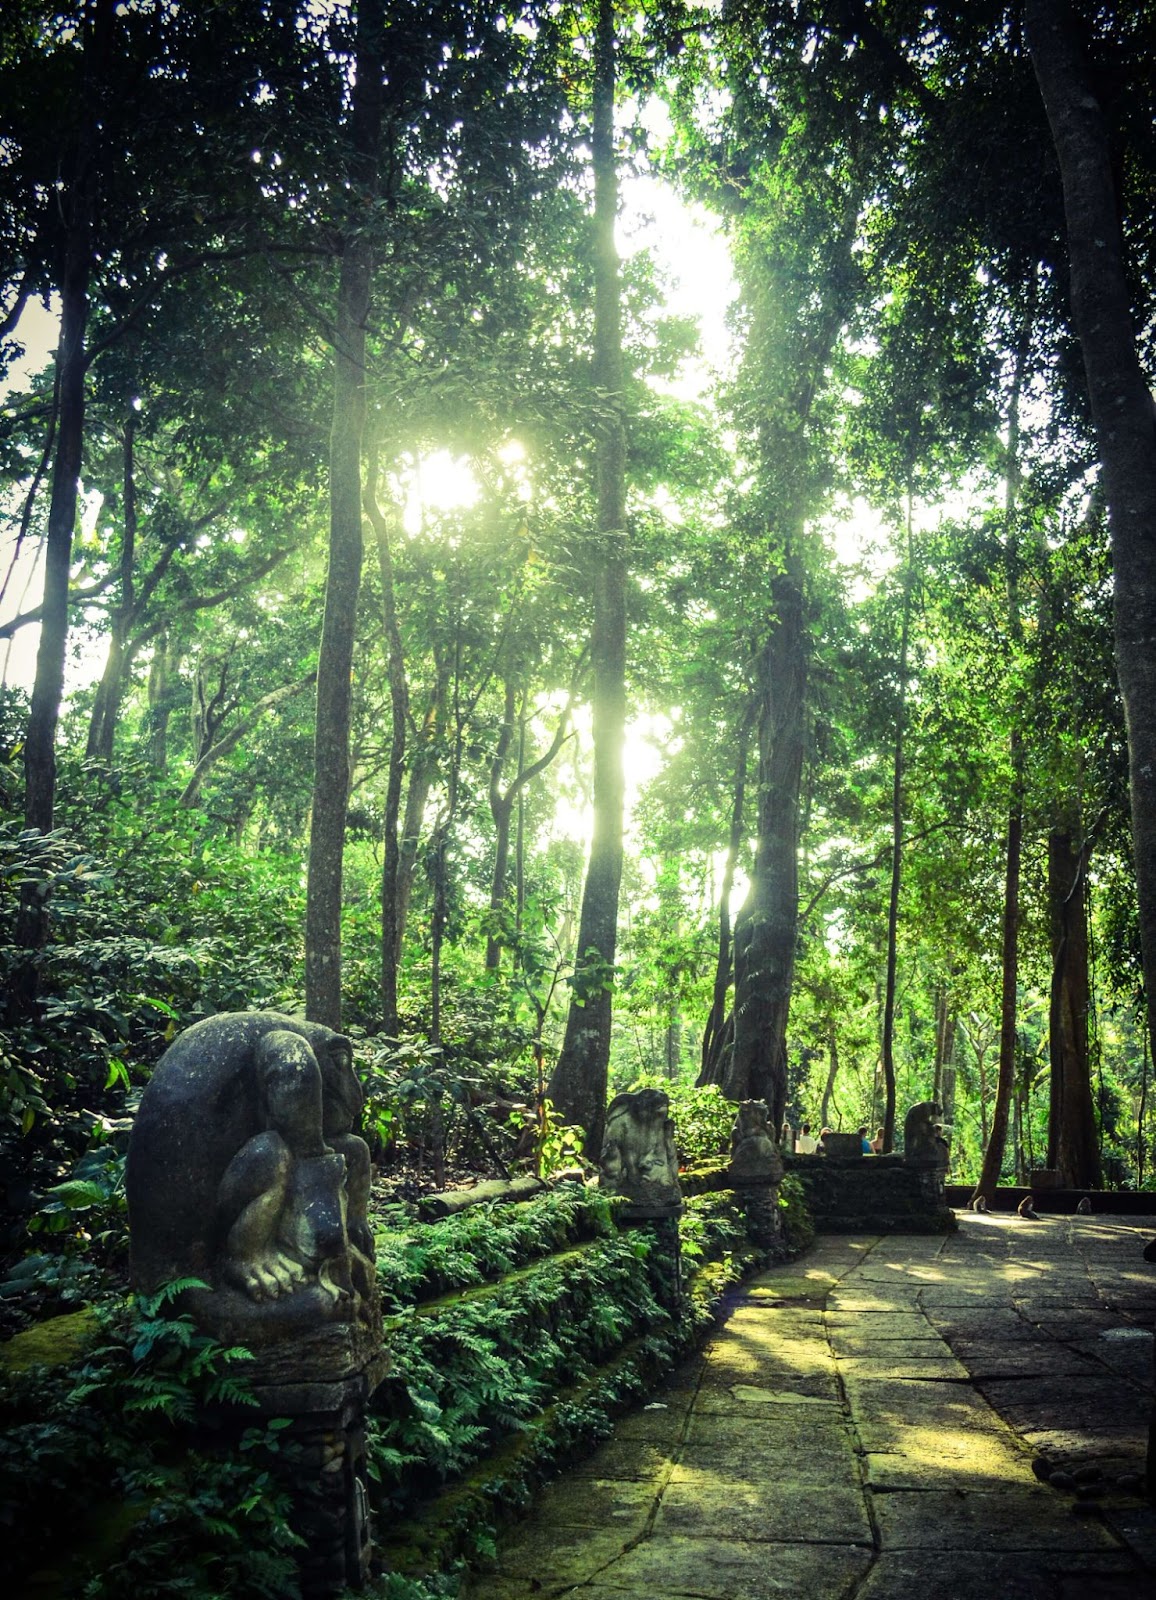 ubud monkey forest, mandala suci wenara